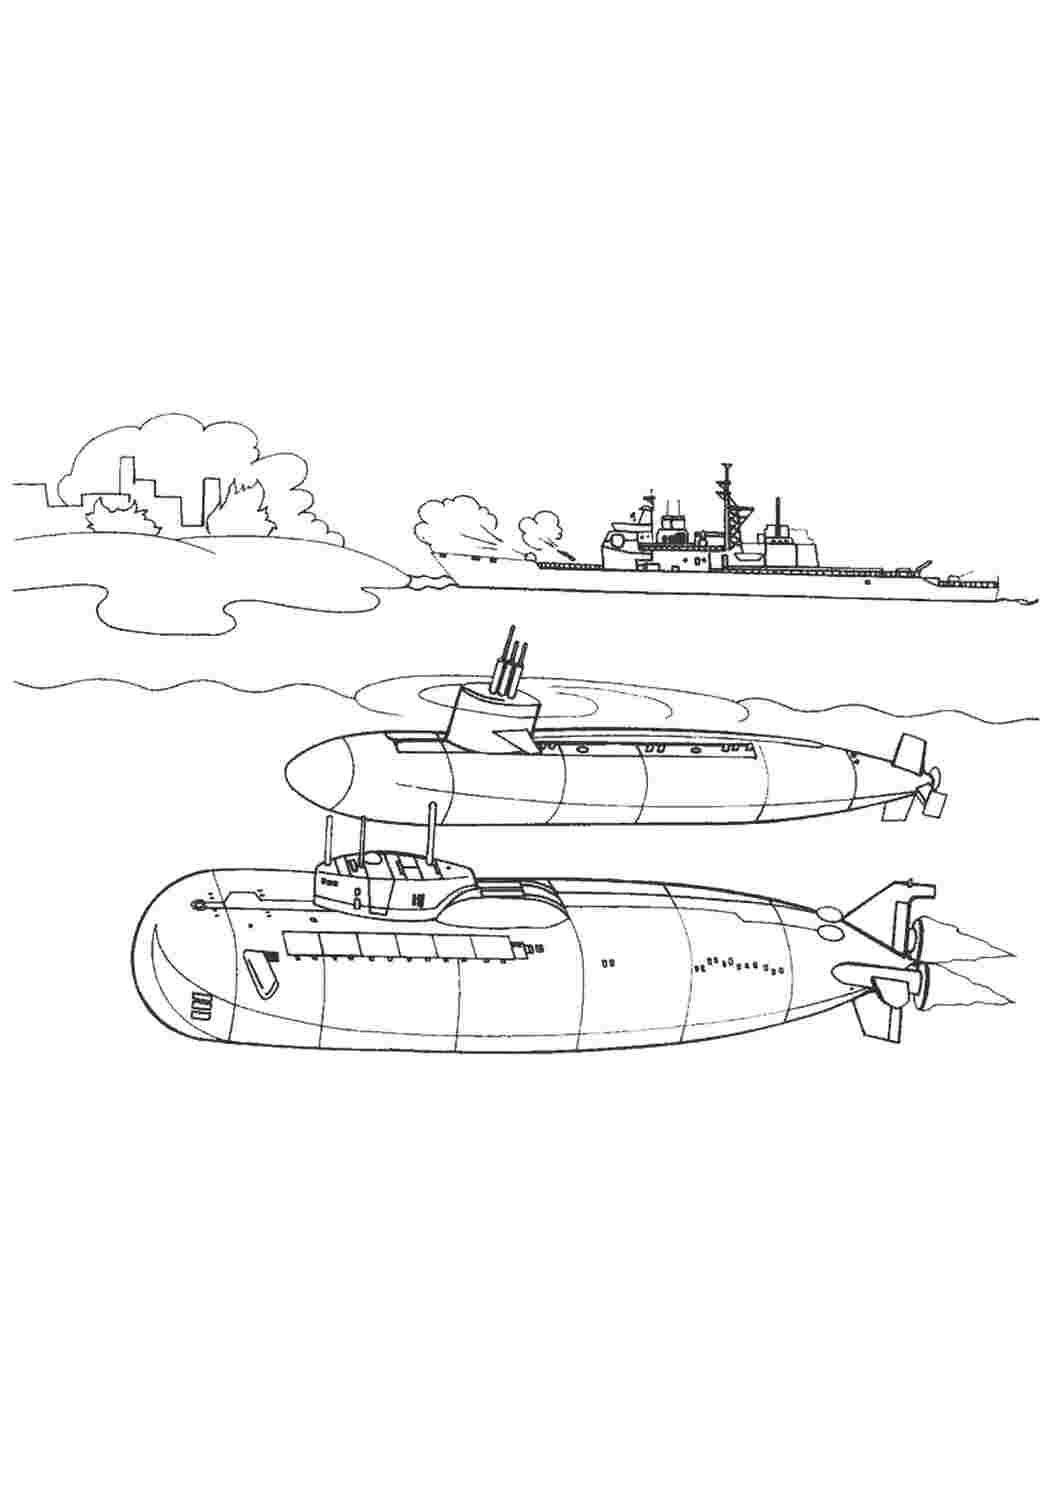 Раскраски Раскраска подводная лодка | детские раскраски, распечатать, скачать Раскраска подводная лодка | детские раскраски, распечатать, скачать  Раскраски скачать онлайн